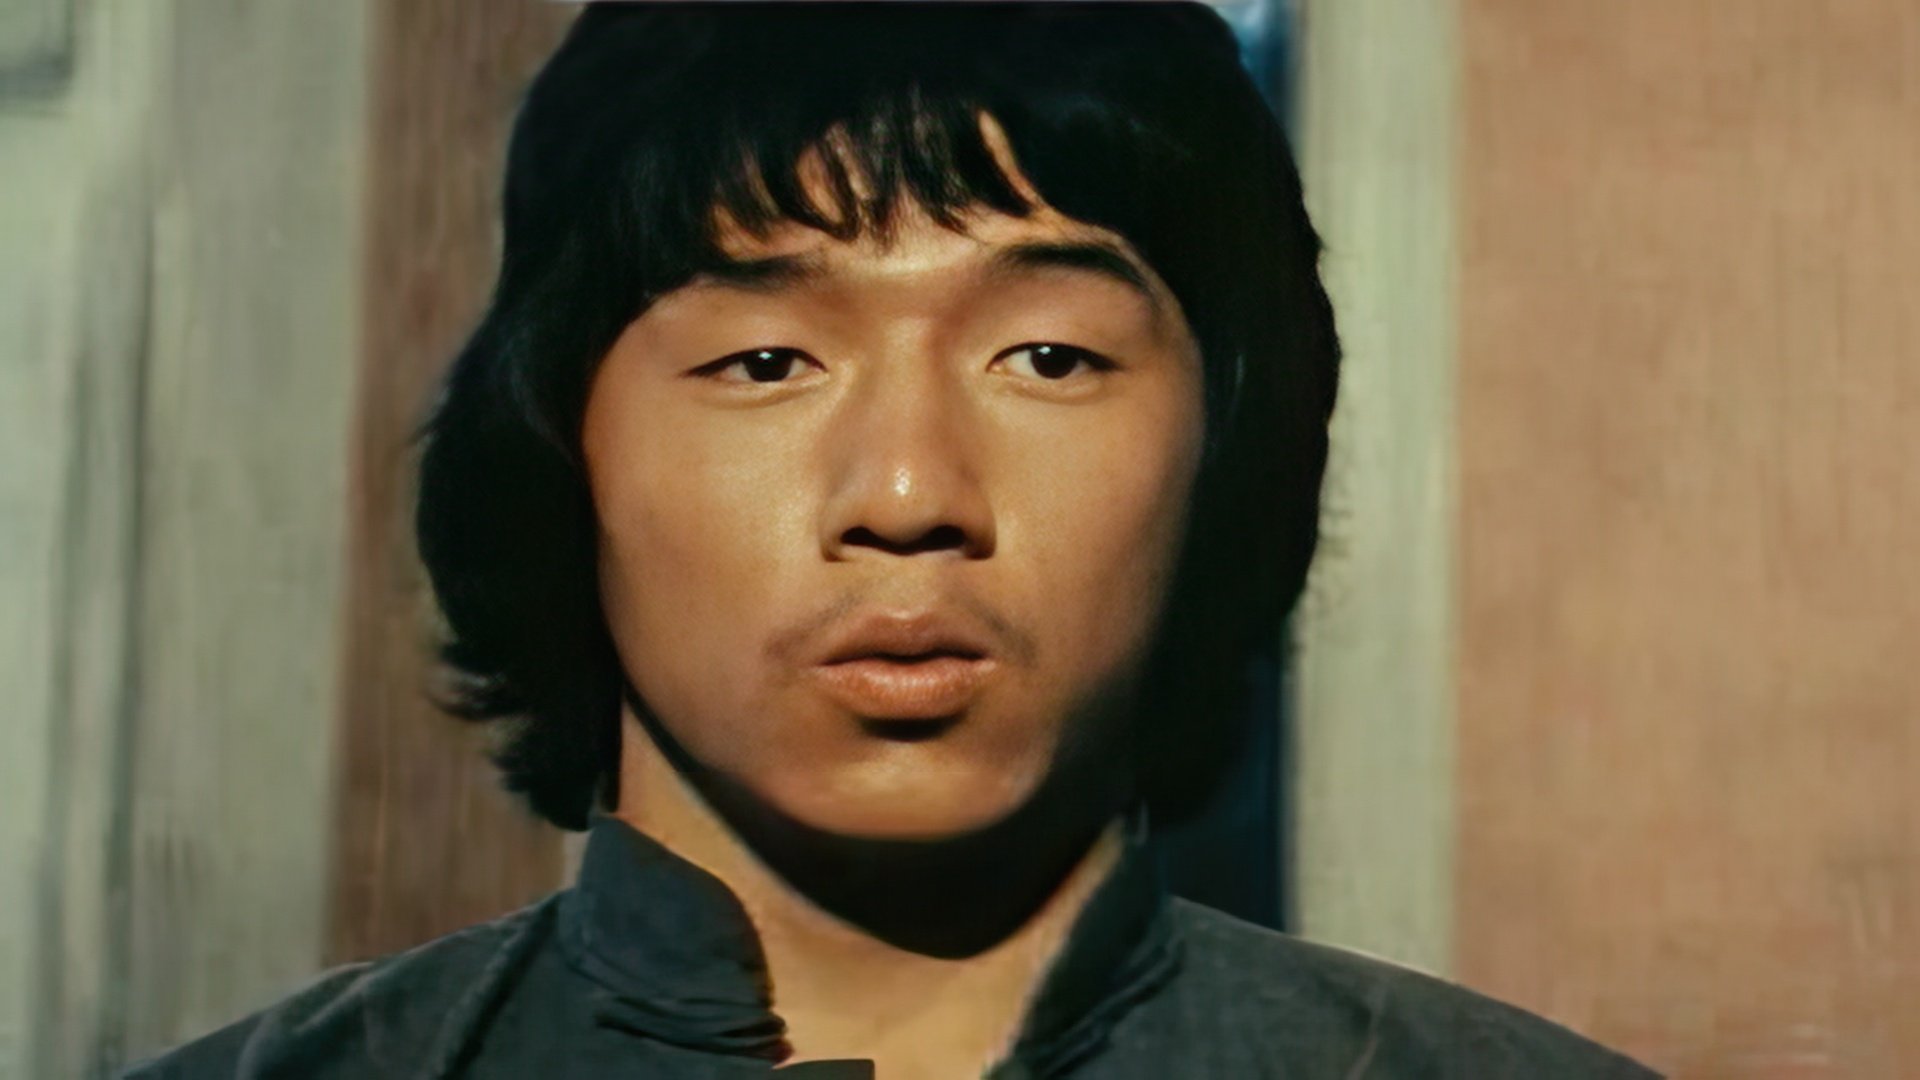 Jackie Chan began his career as a stuntman